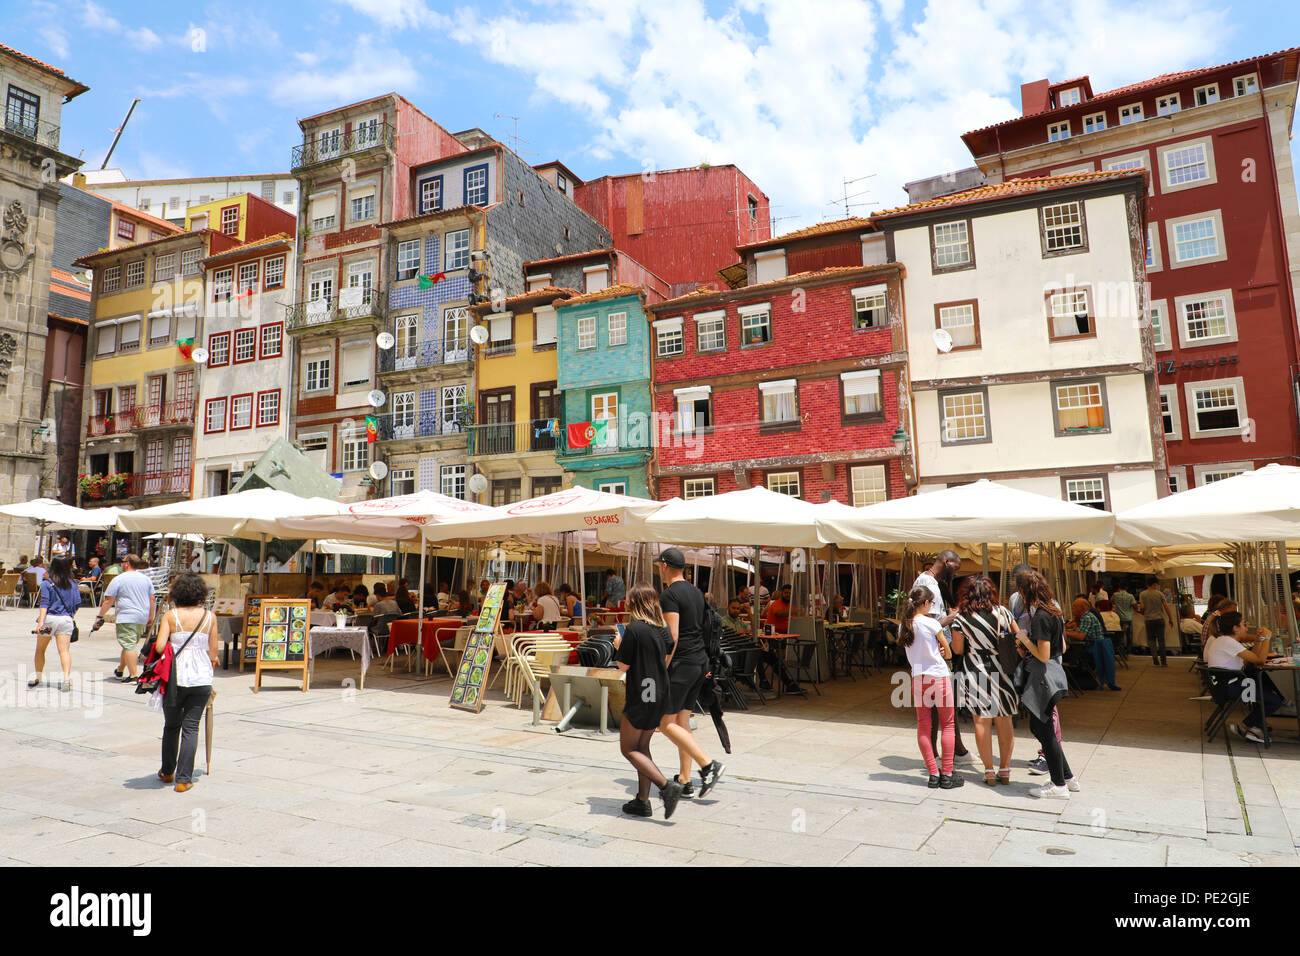 PORTO, Portogallo - 21 giugno 2018: Case colorate e ristoranti lungo il fiume Douro, della città di Porto, Portogallo Foto Stock